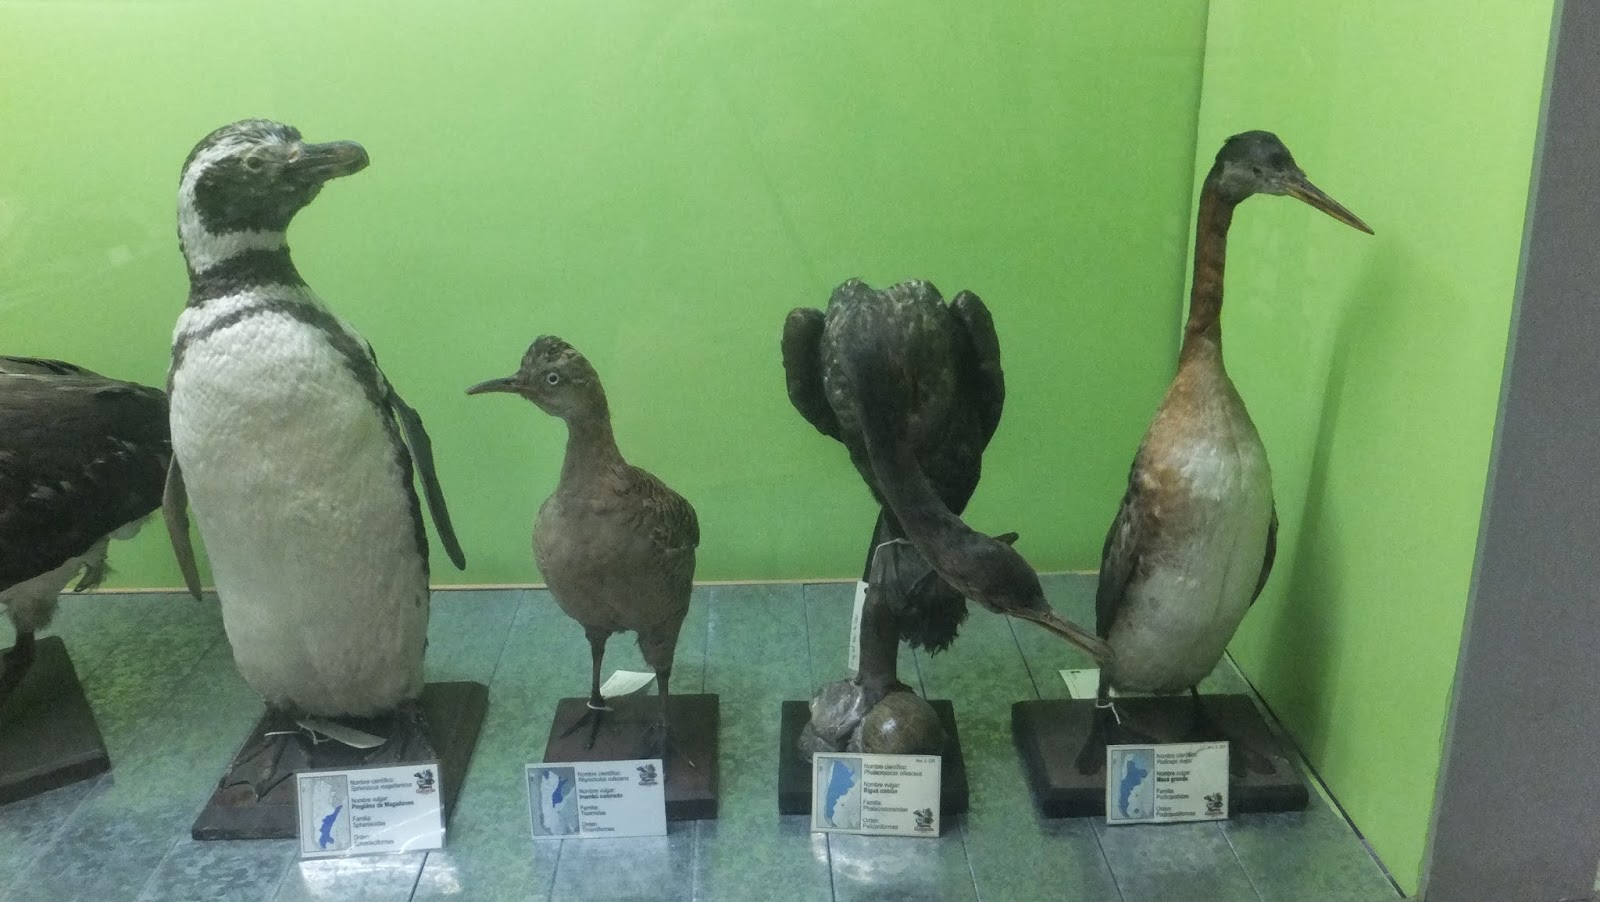 Museo Provincial de Ciencias Naturales Angel Gallardo, Rosario, Argentina, Elisa N, Blog de Viajes, Lifestyle, Travel